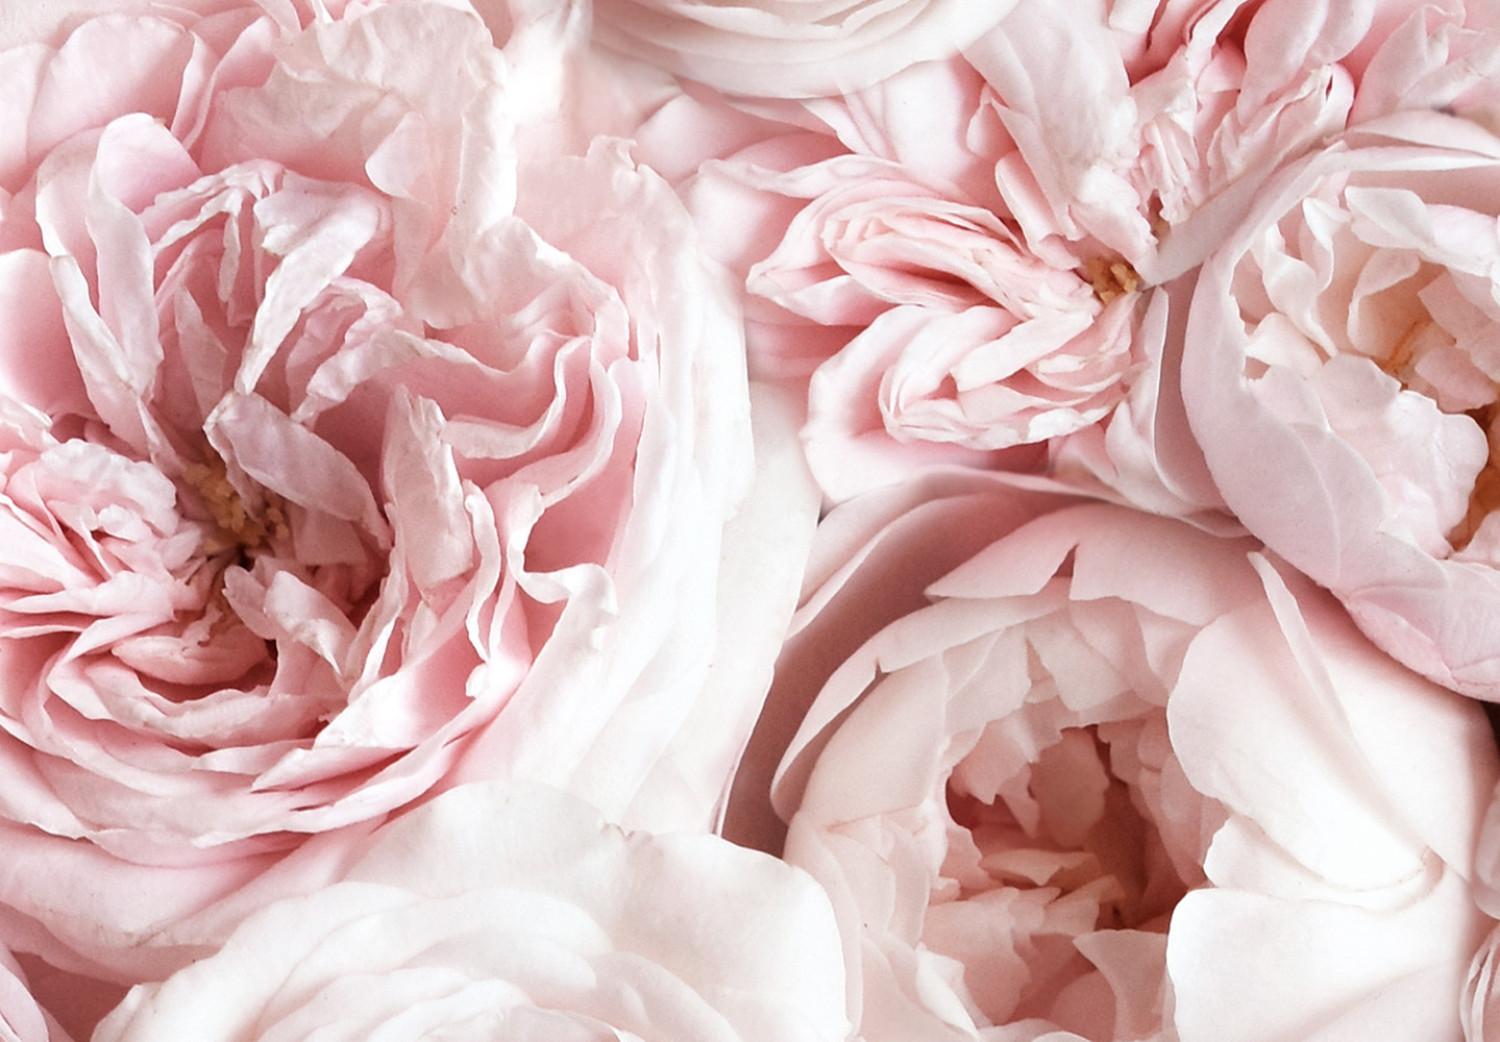 Cuadro decorativo Alfombra de rosas - flores vistas desde arriba en color rosa claro